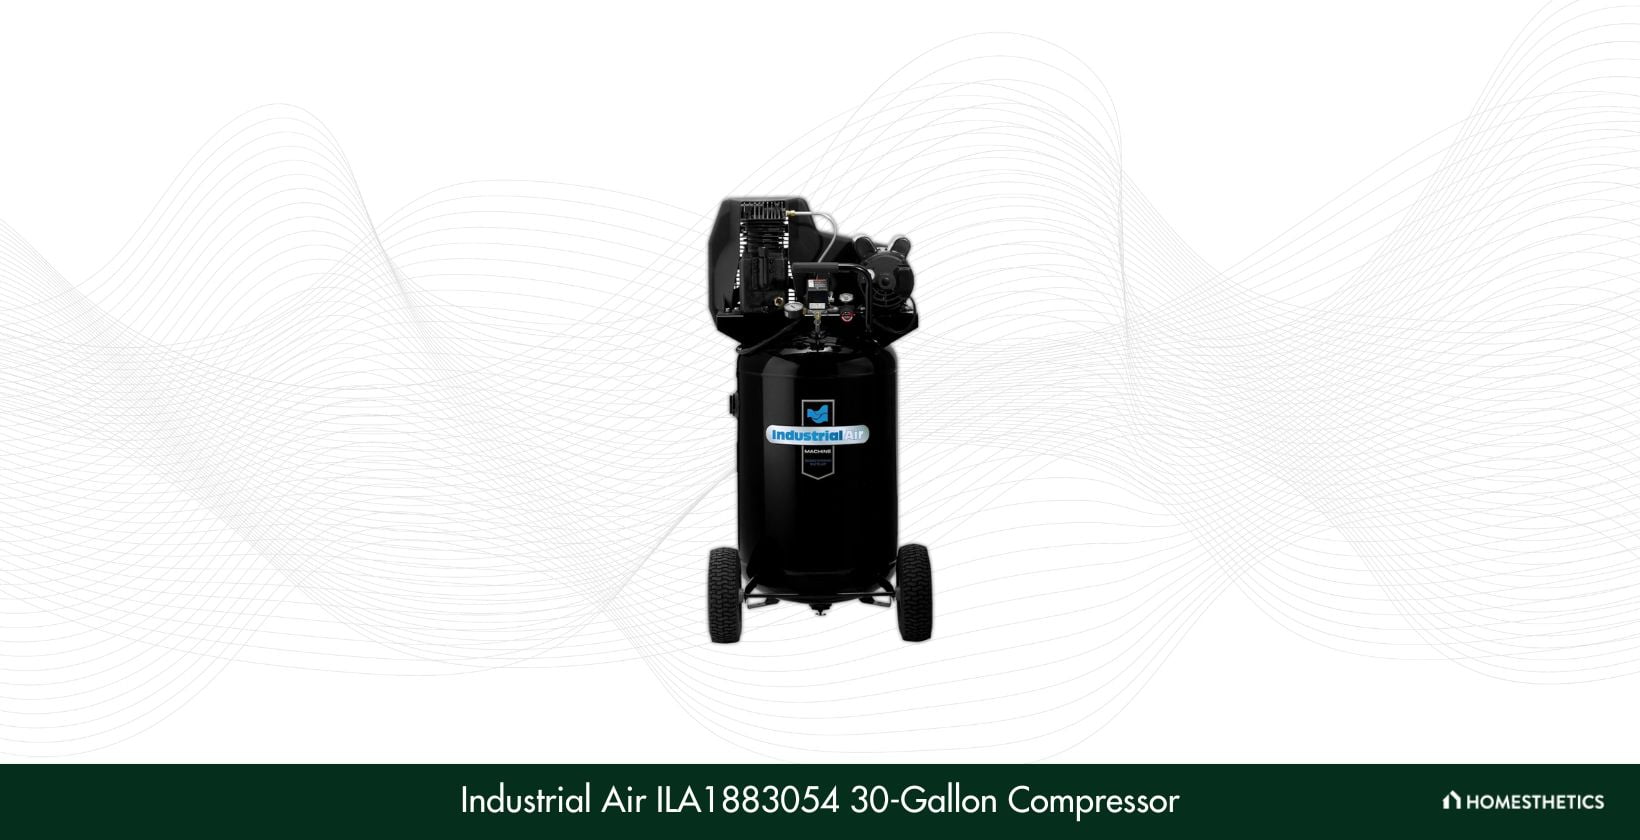 Industrial Air ILA1883054 30 Gallon Belt Driven Air Compressor